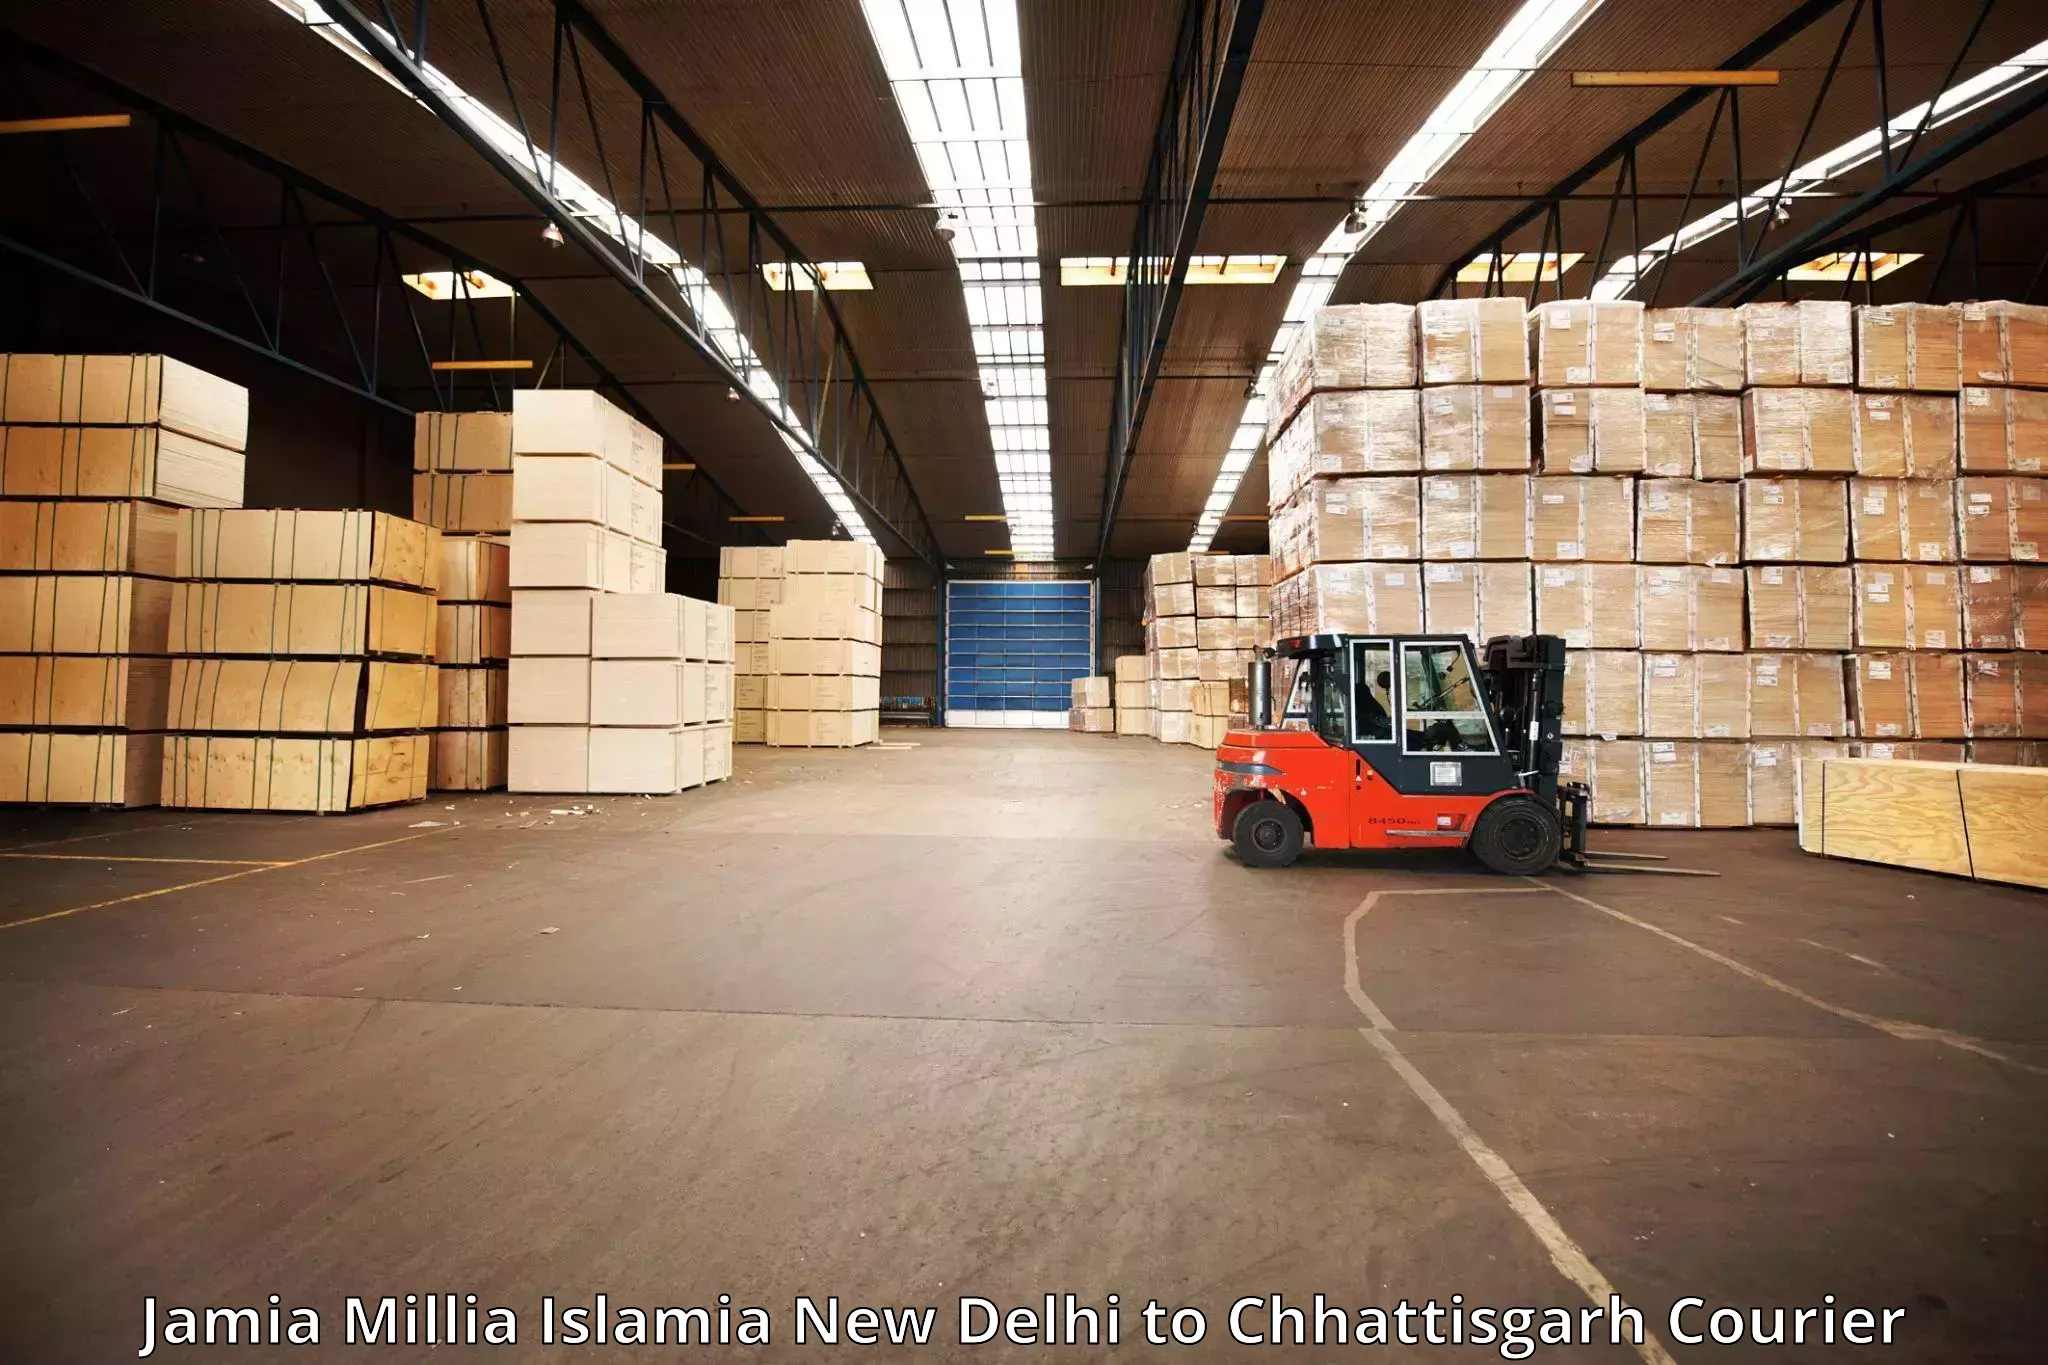 Reliable luggage courier Jamia Millia Islamia New Delhi to Bijapur Chhattisgarh